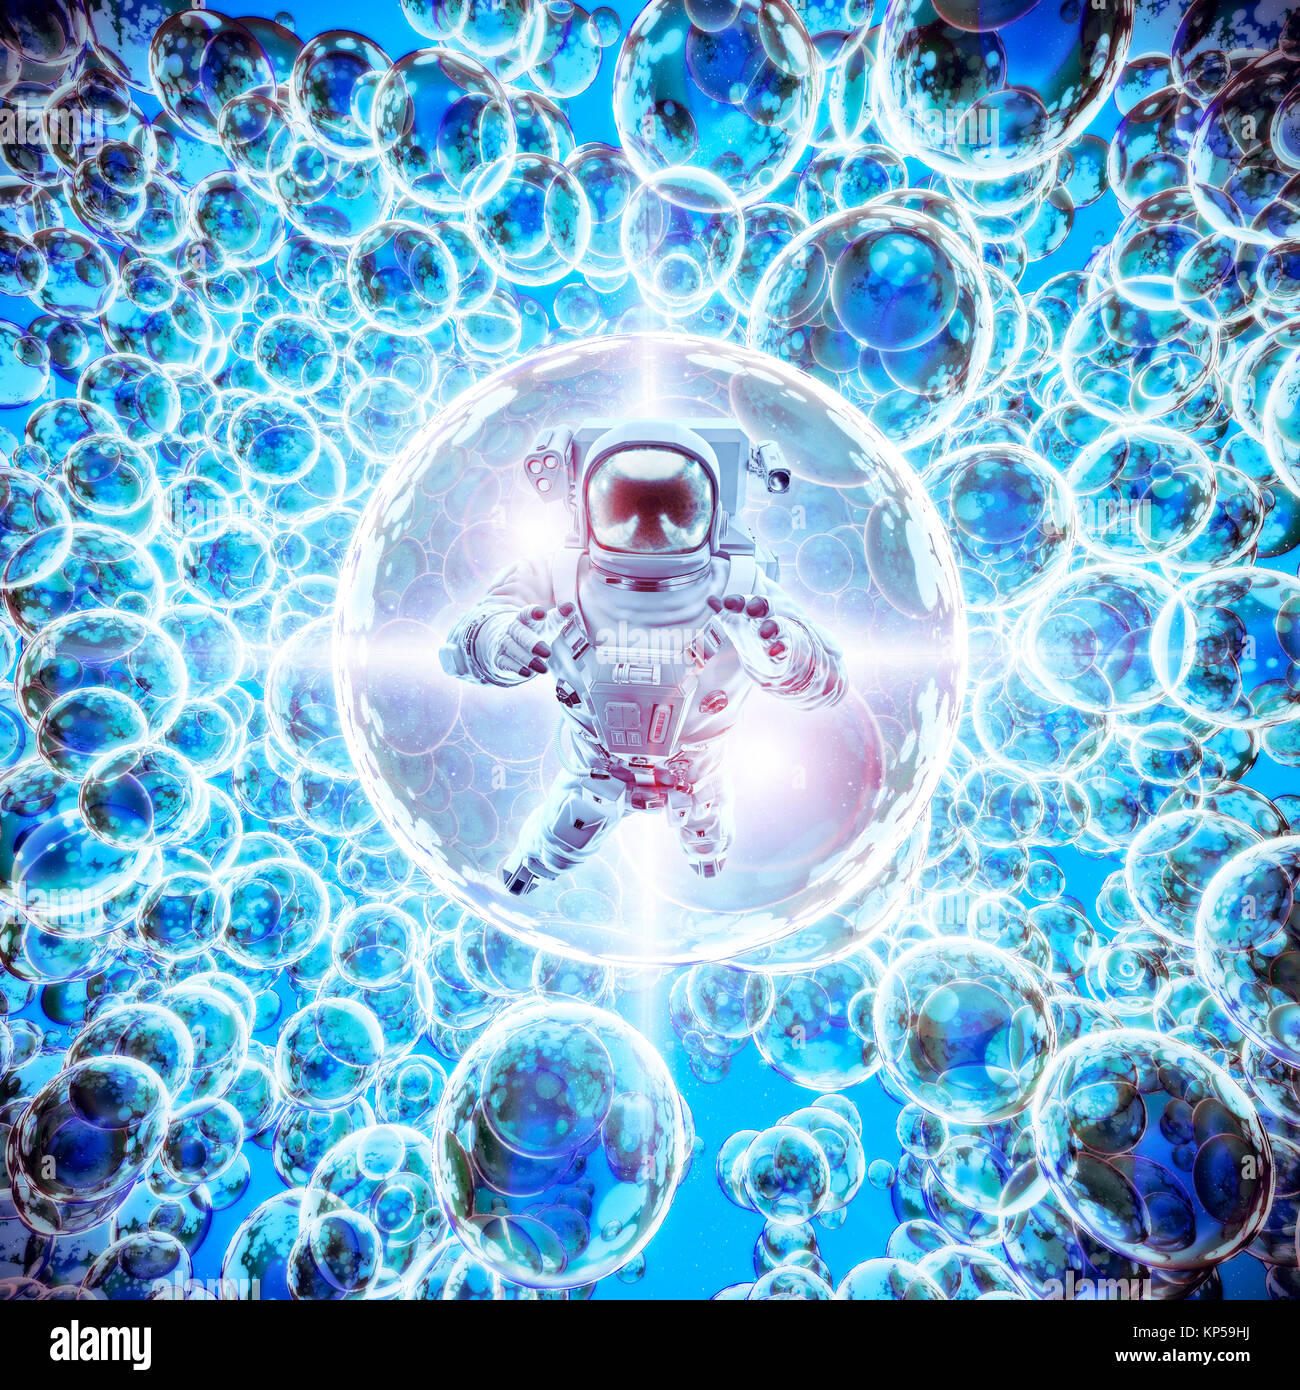 L'astronaute de galaxies infinie / 3D illustration de l'astronaute lumineux flottant entre les sphères galactiques lumineux Banque D'Images